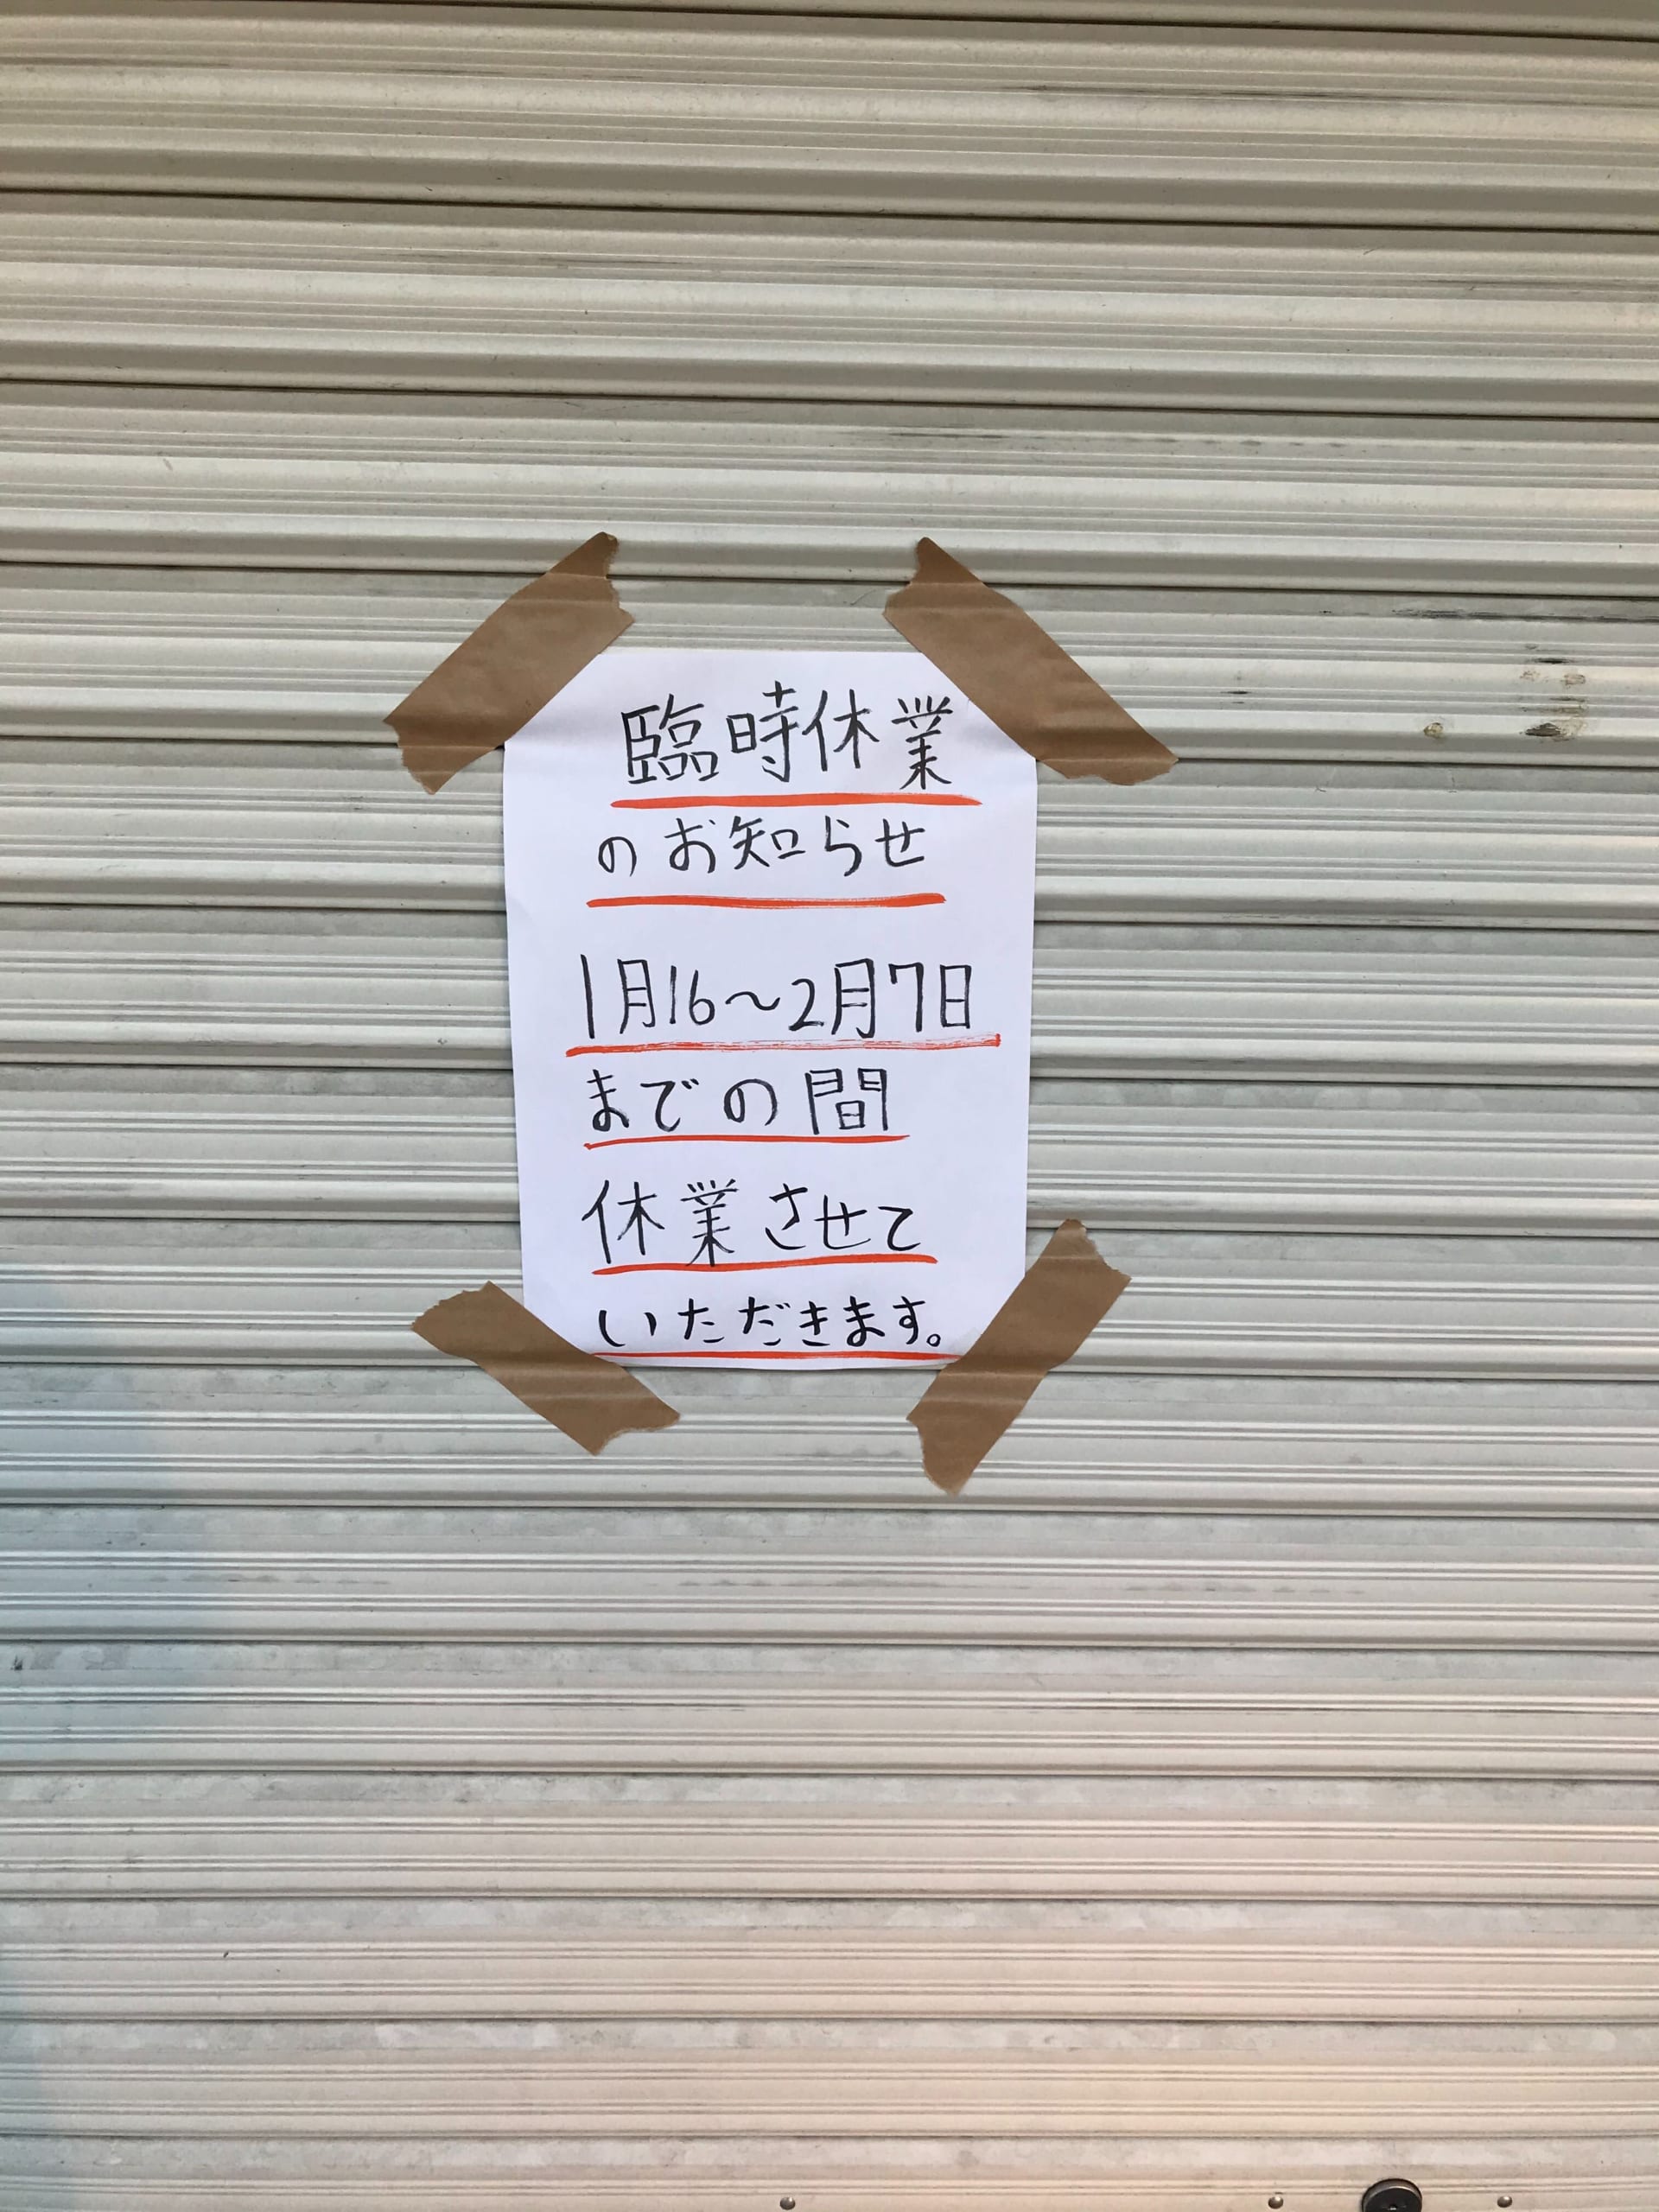 金 福岡 県 協力 【新型コロナ】大阪・福岡で独自の飲食店支援。時短協力金への上乗せや家賃補助も